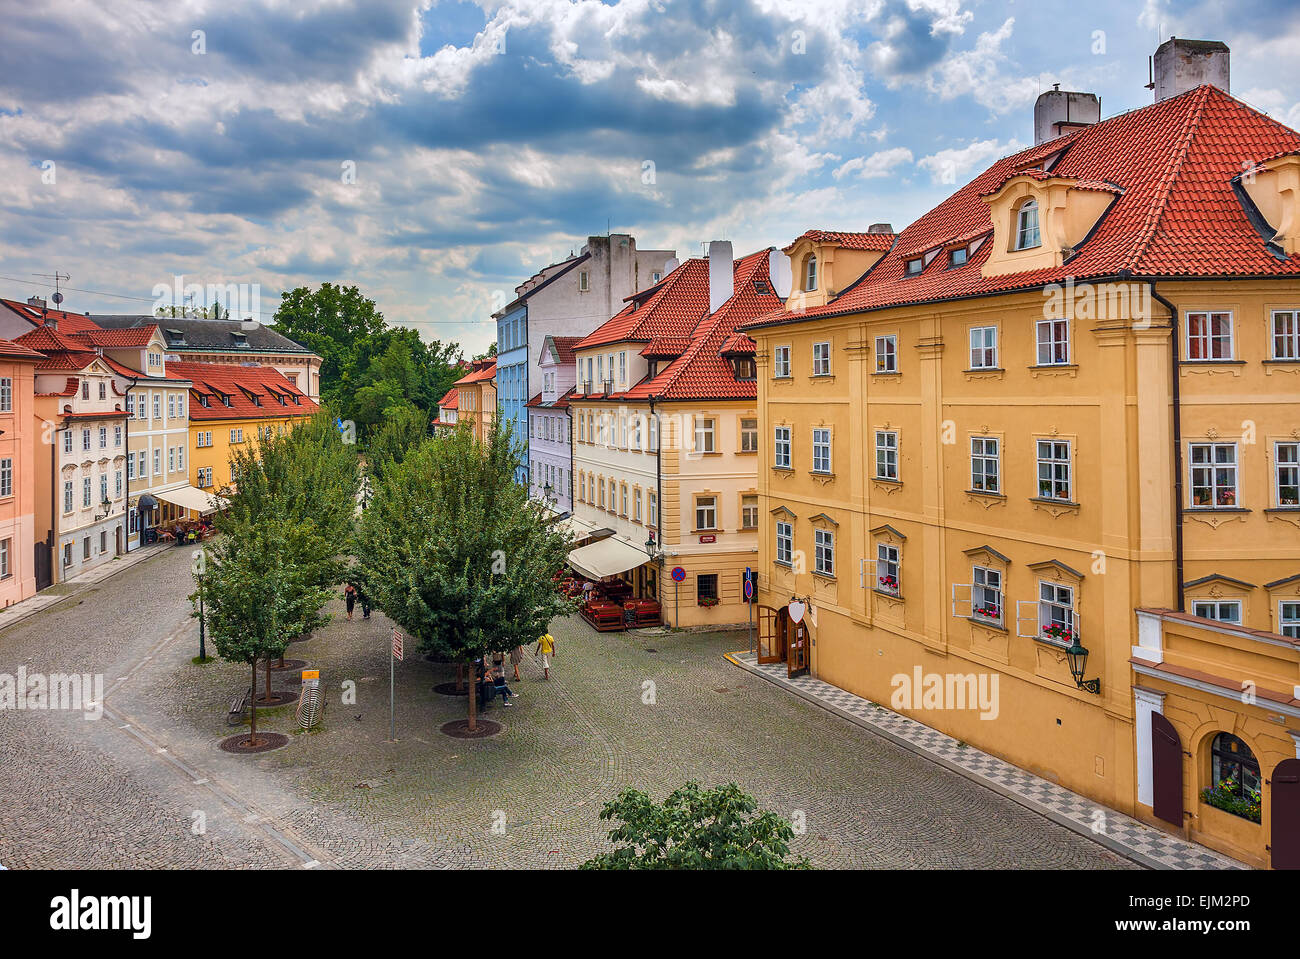 Typische bunte Häuser mit roten Dächern im alten Prag, Tschechische Republik. Stockfoto